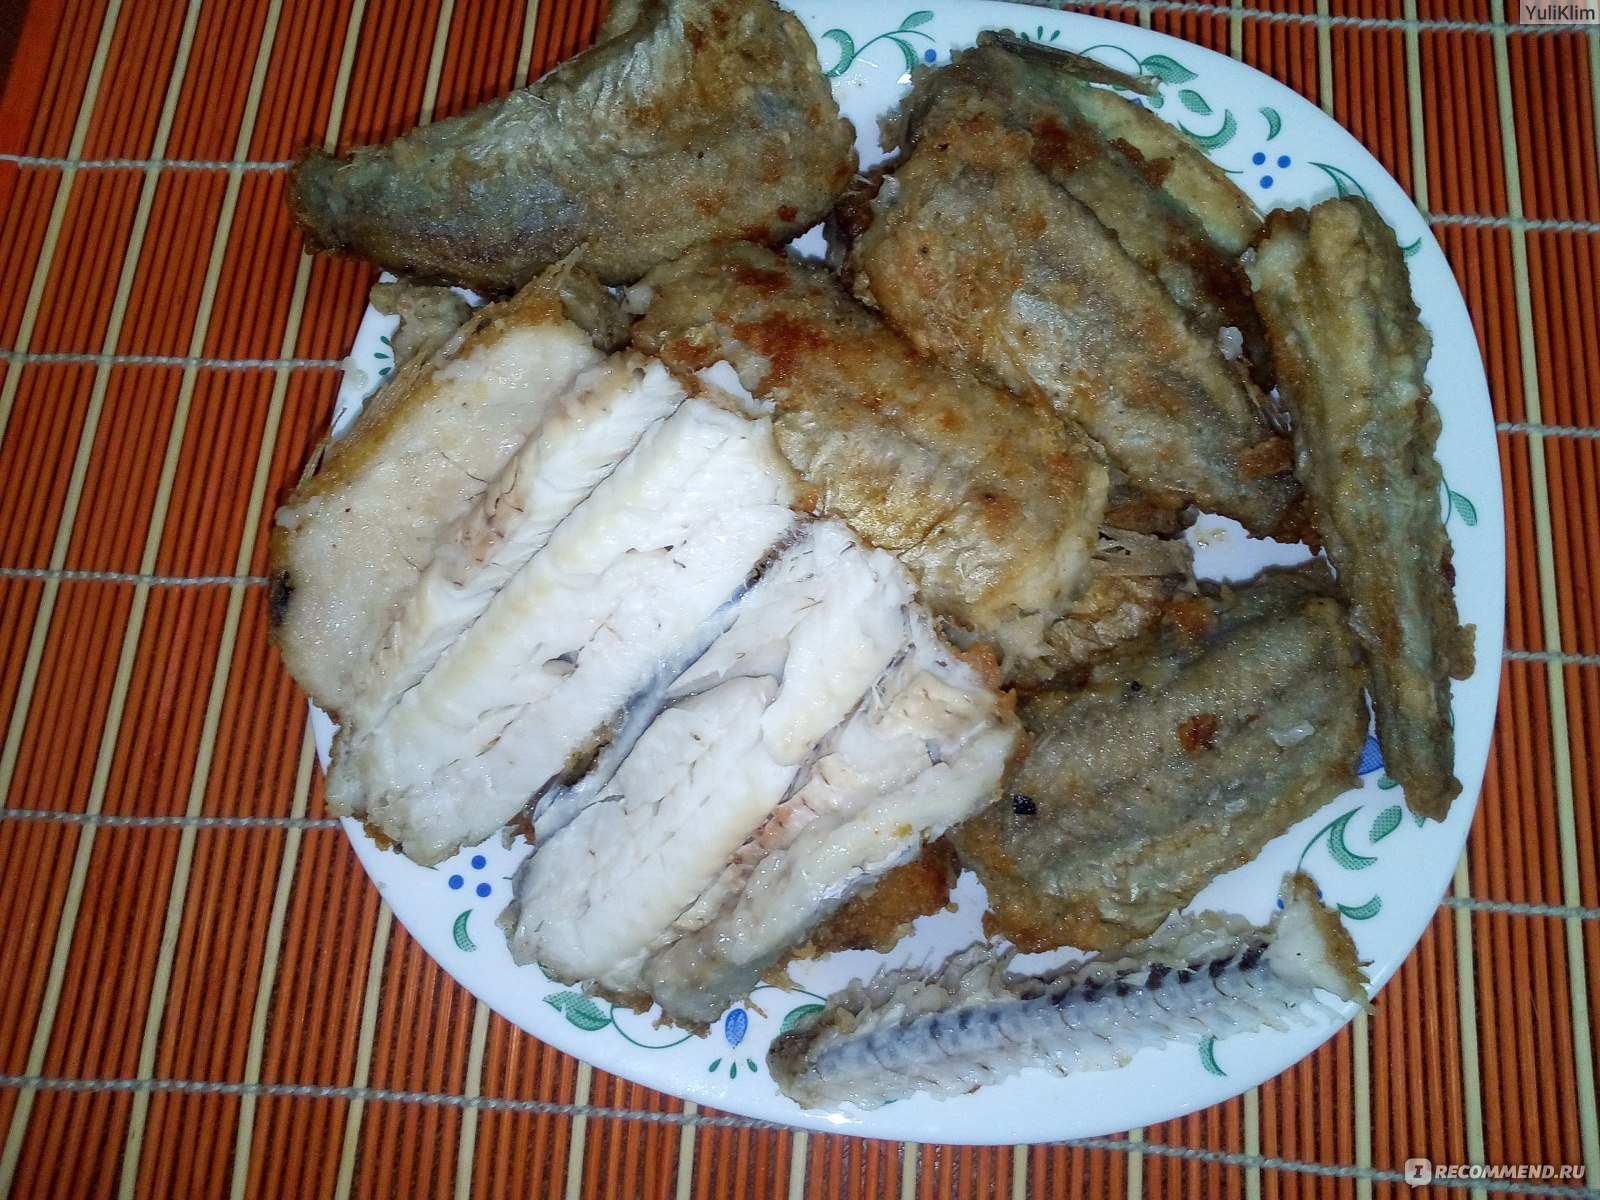 Рецепт: Рыбный суп из путассу - Лёгкий, вкусный супчик